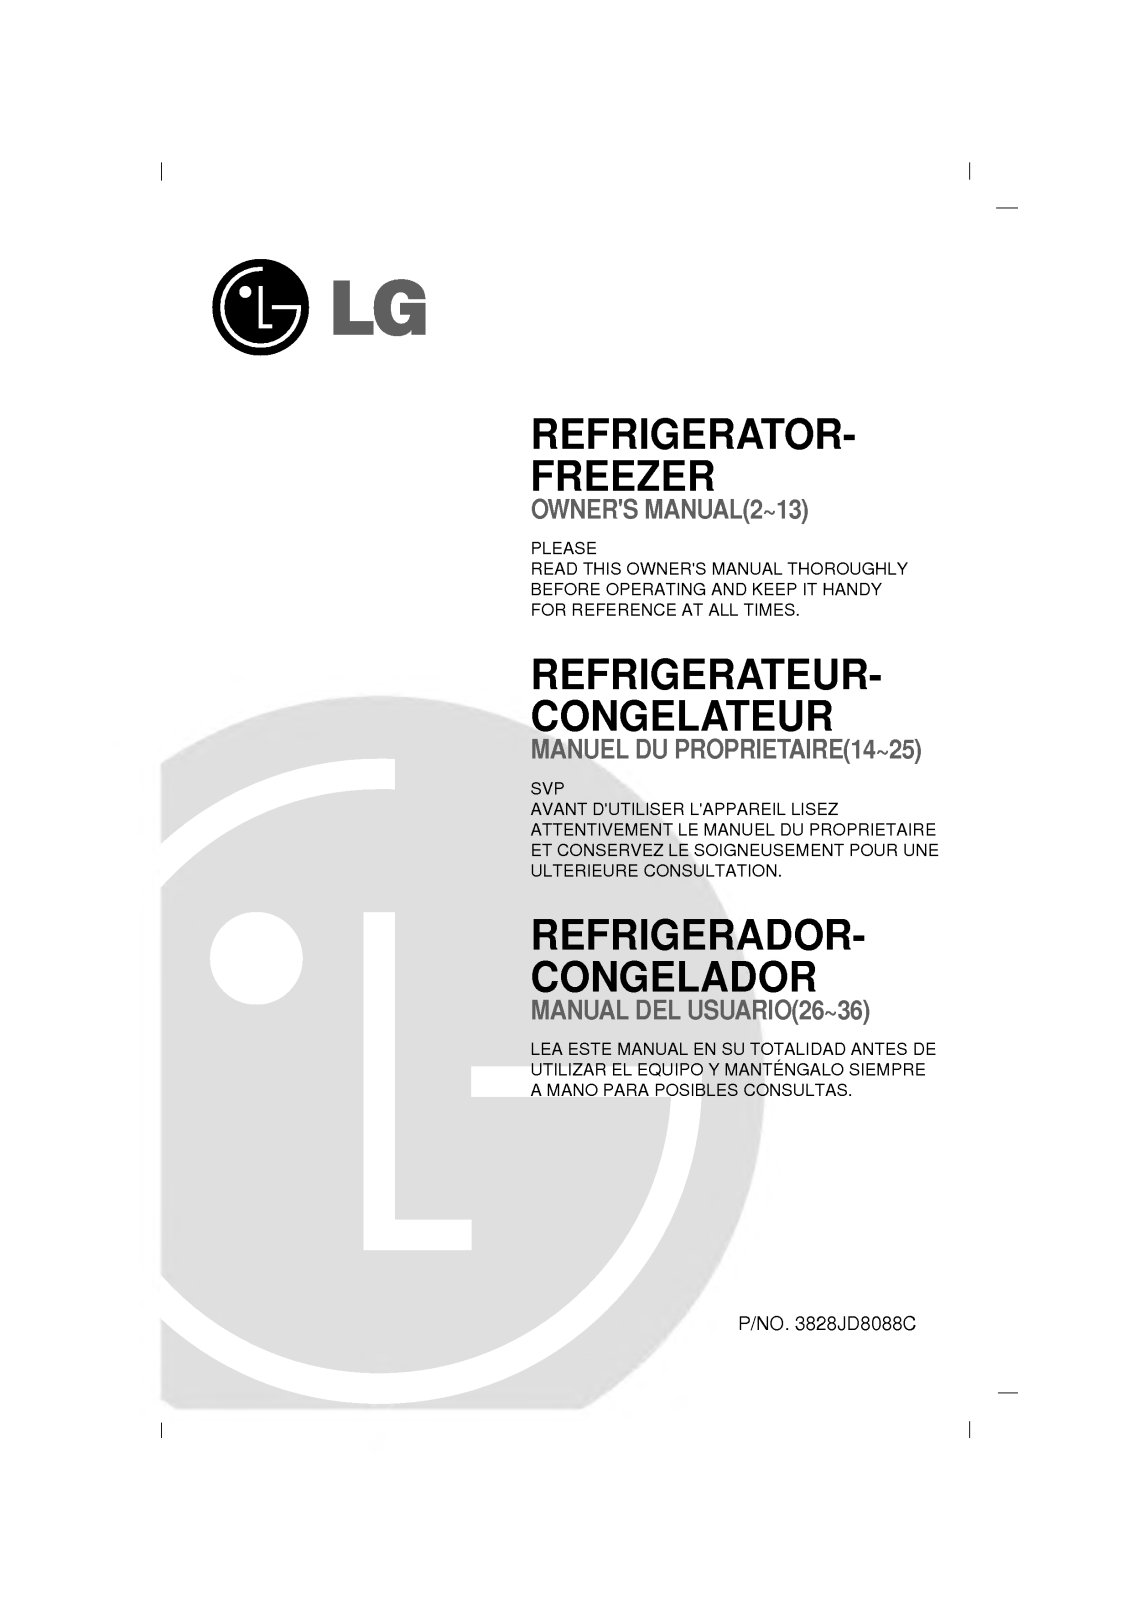 LG ER249, GR-262SVF Manual